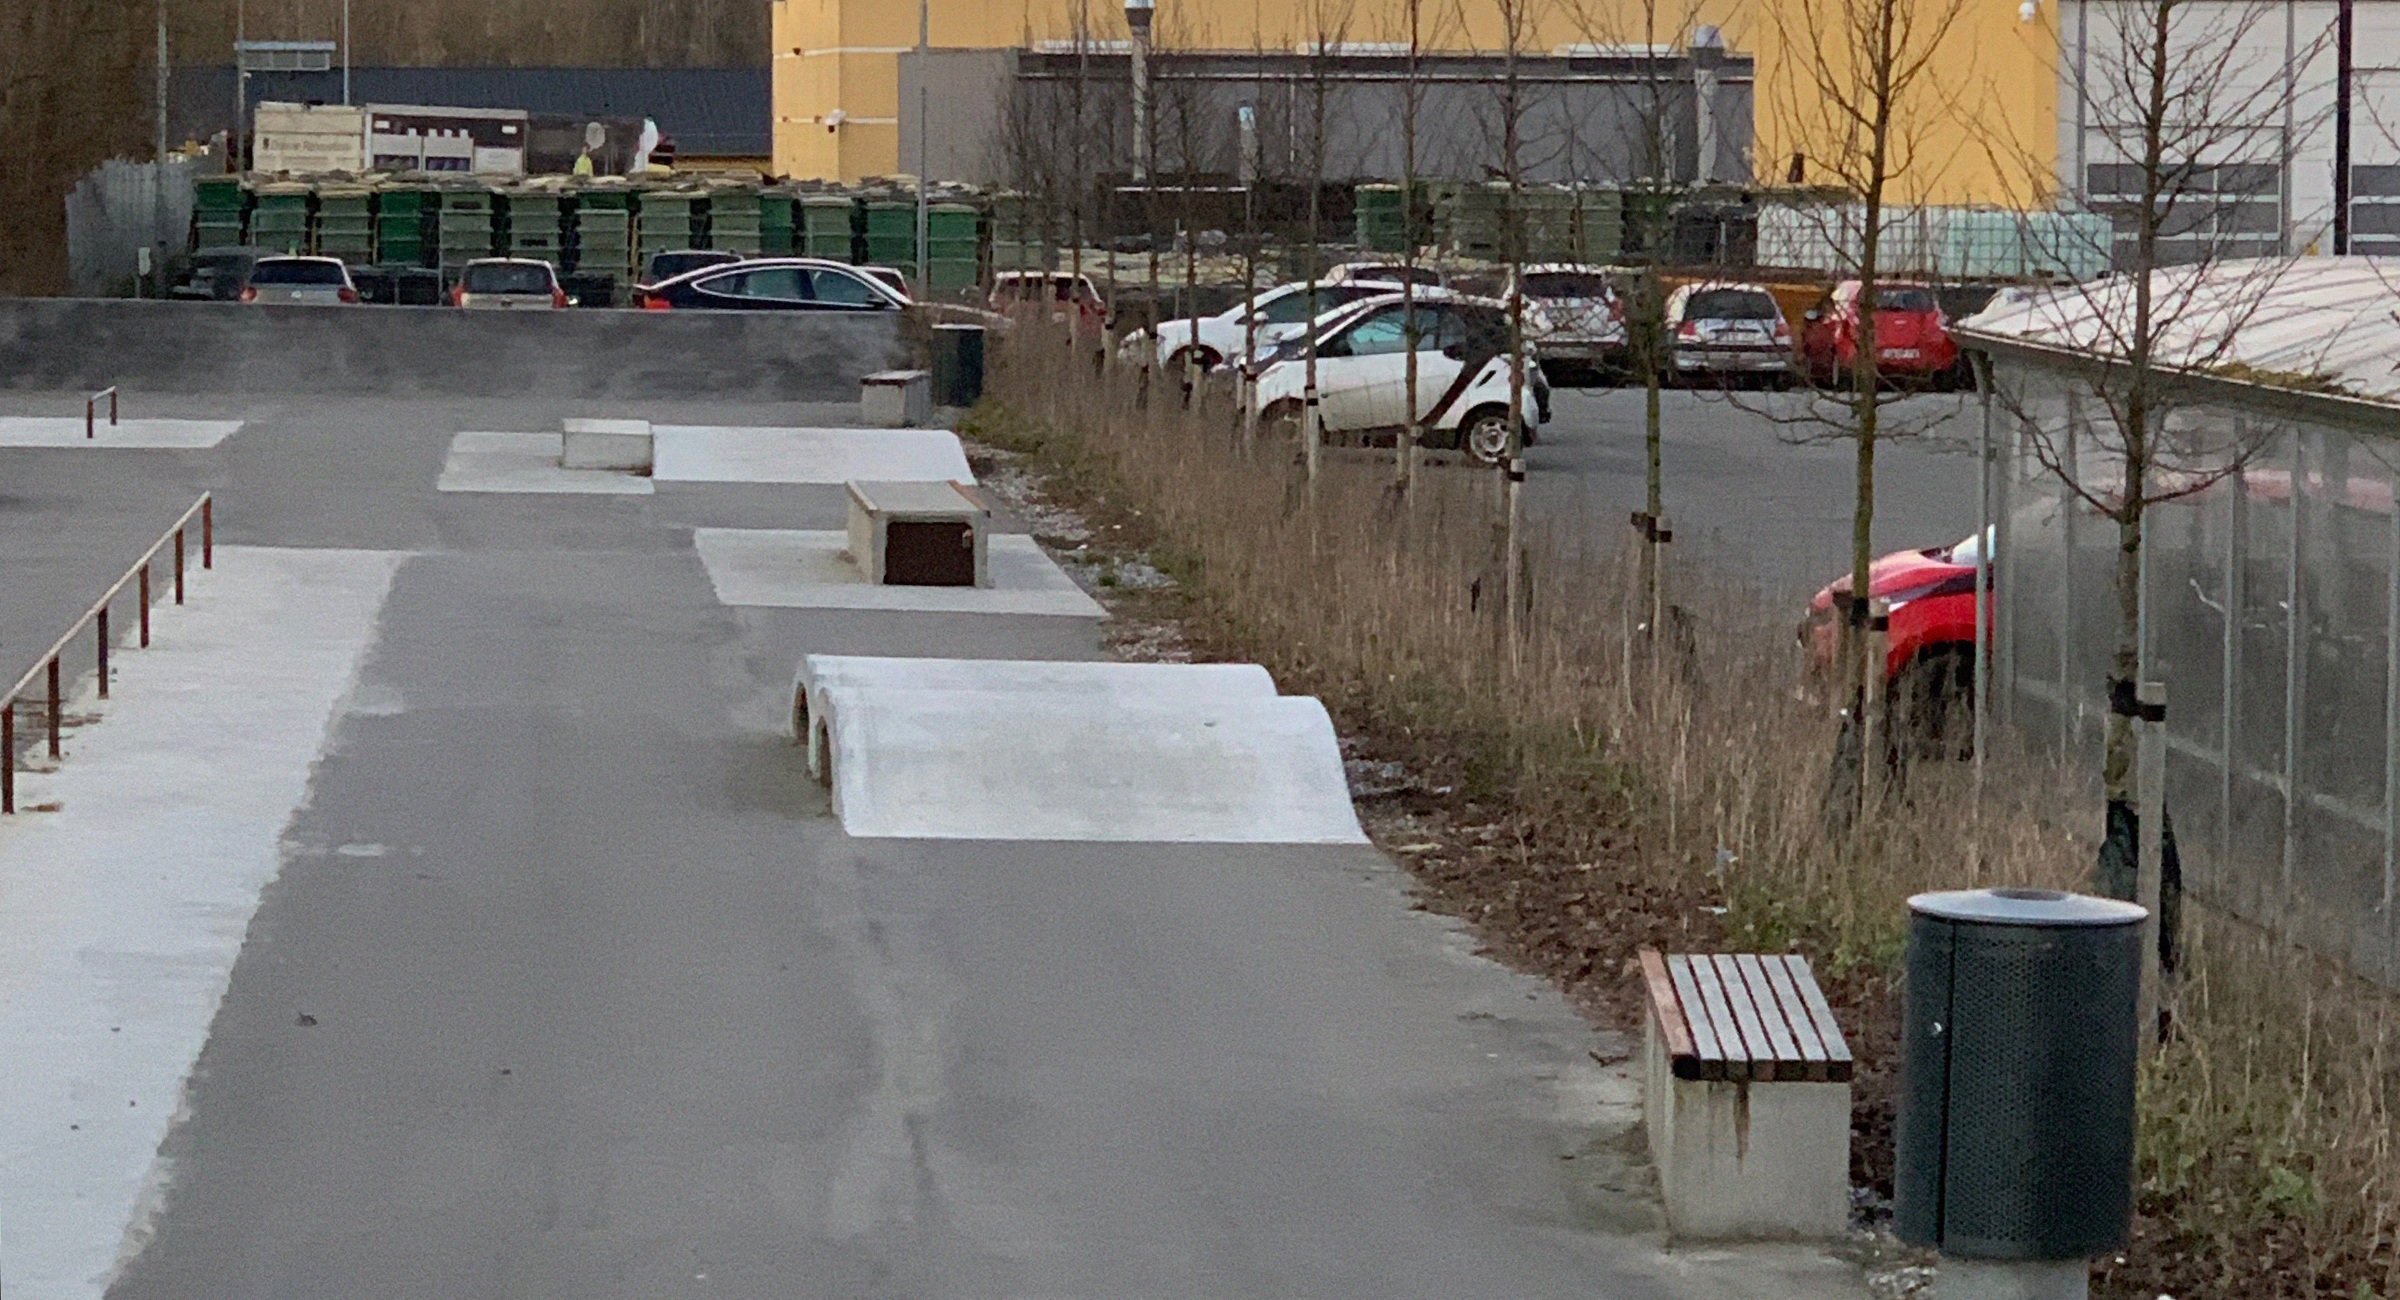 Her ses en række små betonramper til skateboard